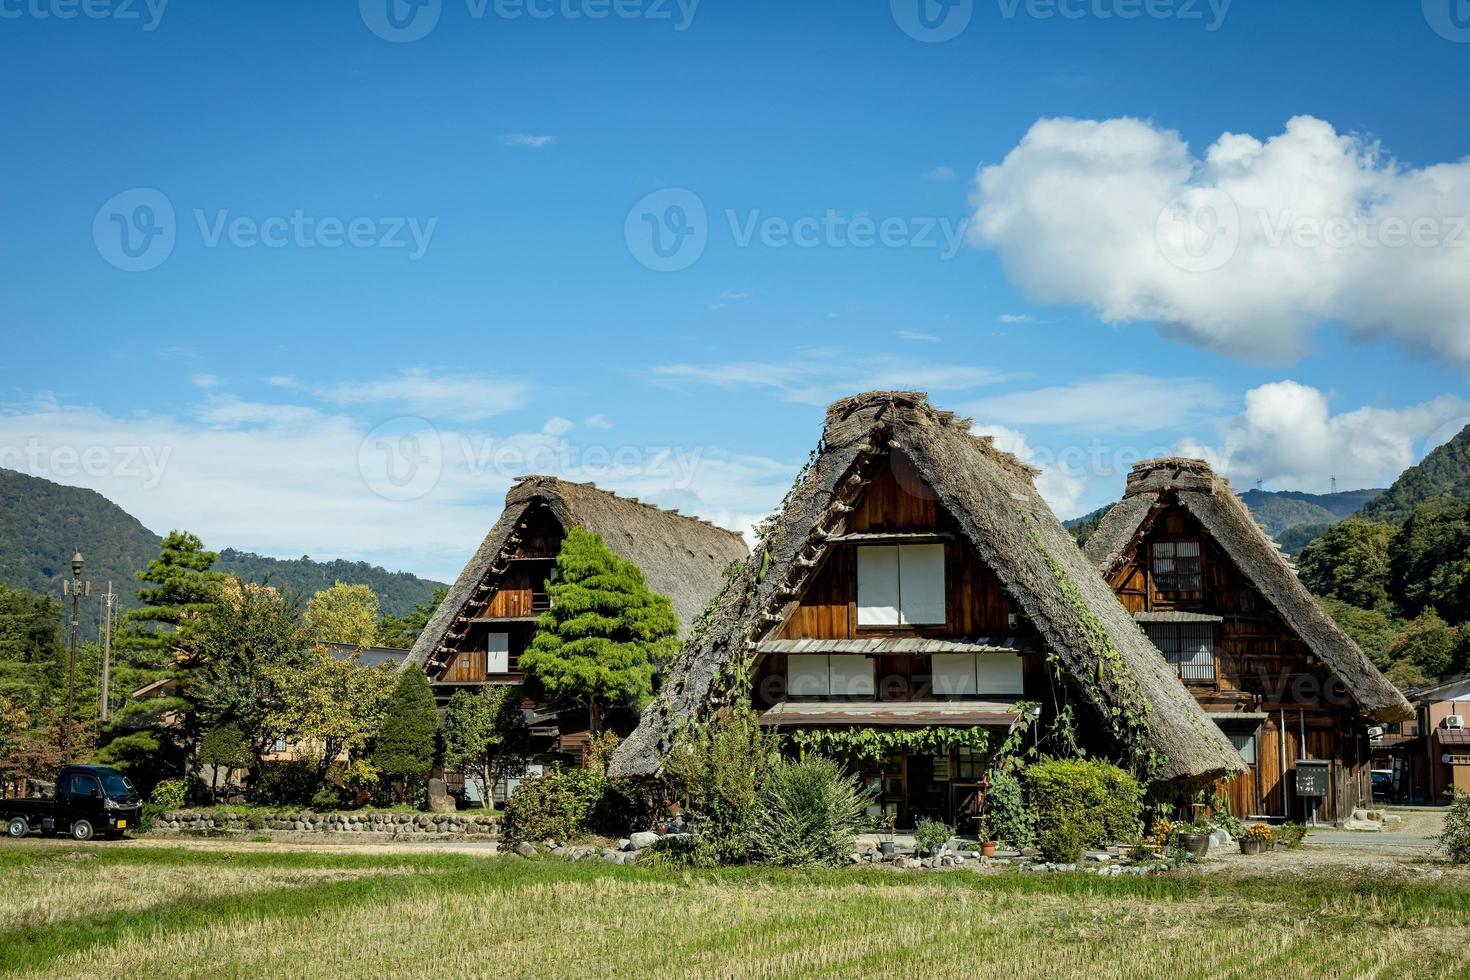 shirakawa tradizionale e storico giapponese villaggio shirakawago nel autunno. Casa costruire di di legno con tetto gassho zukuri stile. shirakawa-go è unesco mondo eredità e superiore punto di riferimento individuare nel Giappone. foto